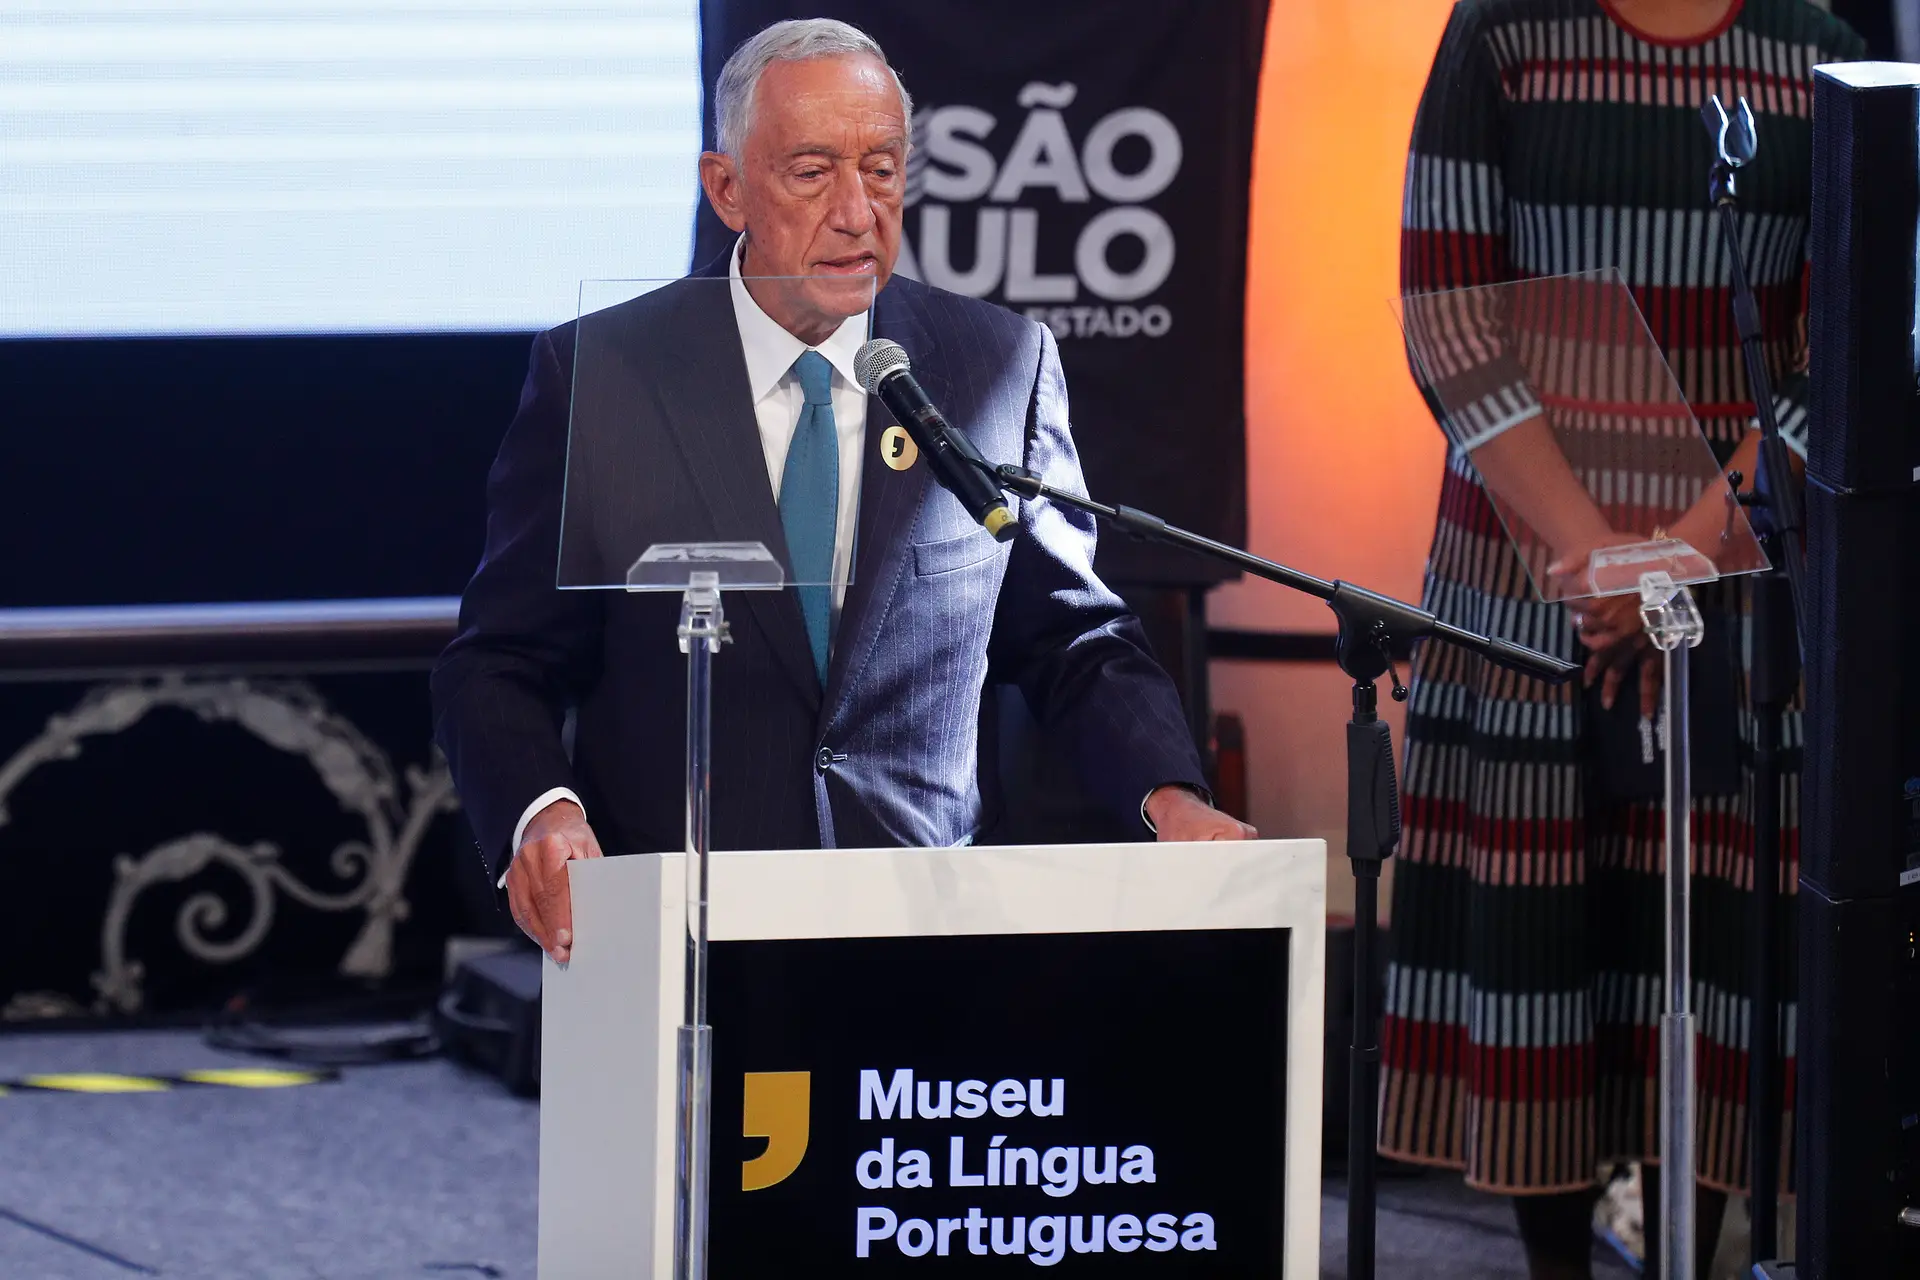 “Dança quem está na roda”: a resposta de Marcelo à ausência de Bolsonaro na reinauguração do Museu da Língua Portuguesa